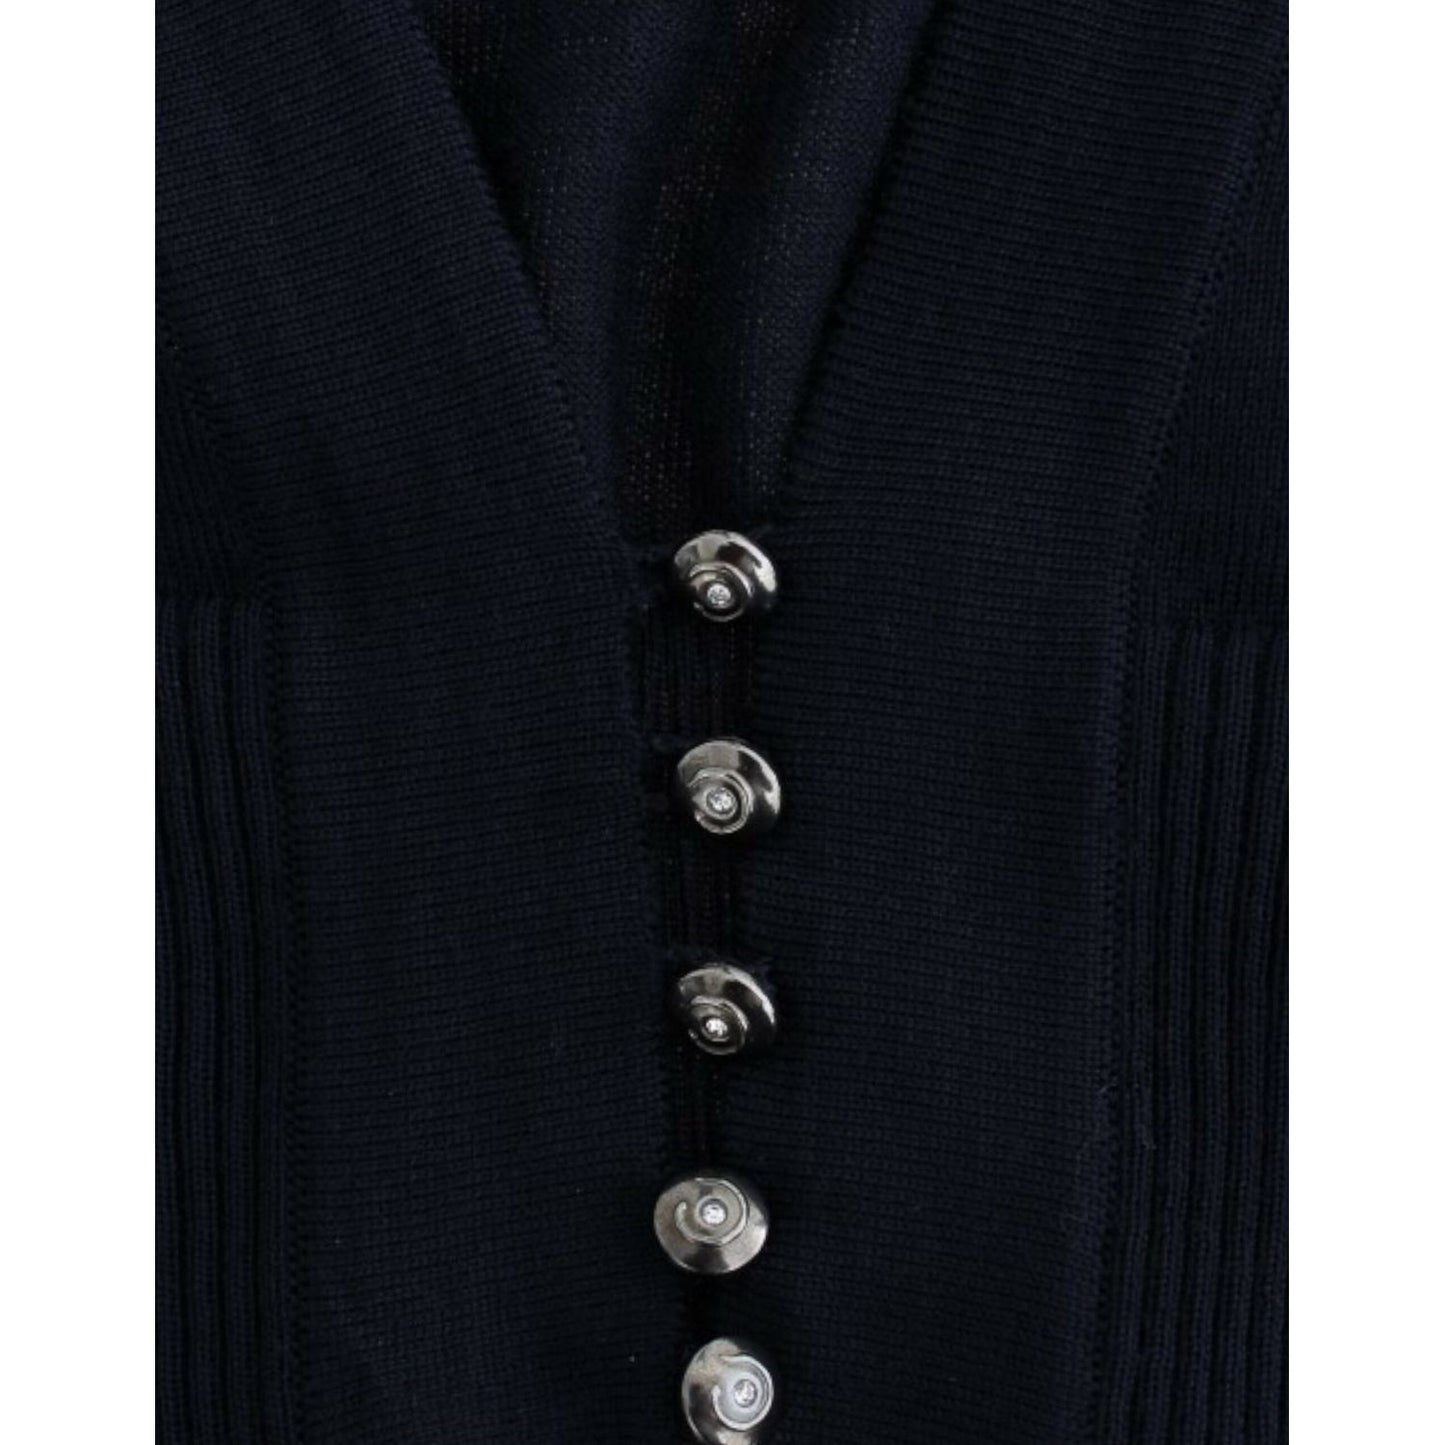 Cavalli Elegant Cropped Virgin Wool Cardigan blue-cropped-wool-cardigan 9598-blue-cropped-wool-cardigan-5-scaled-53daa9ea-798.jpg